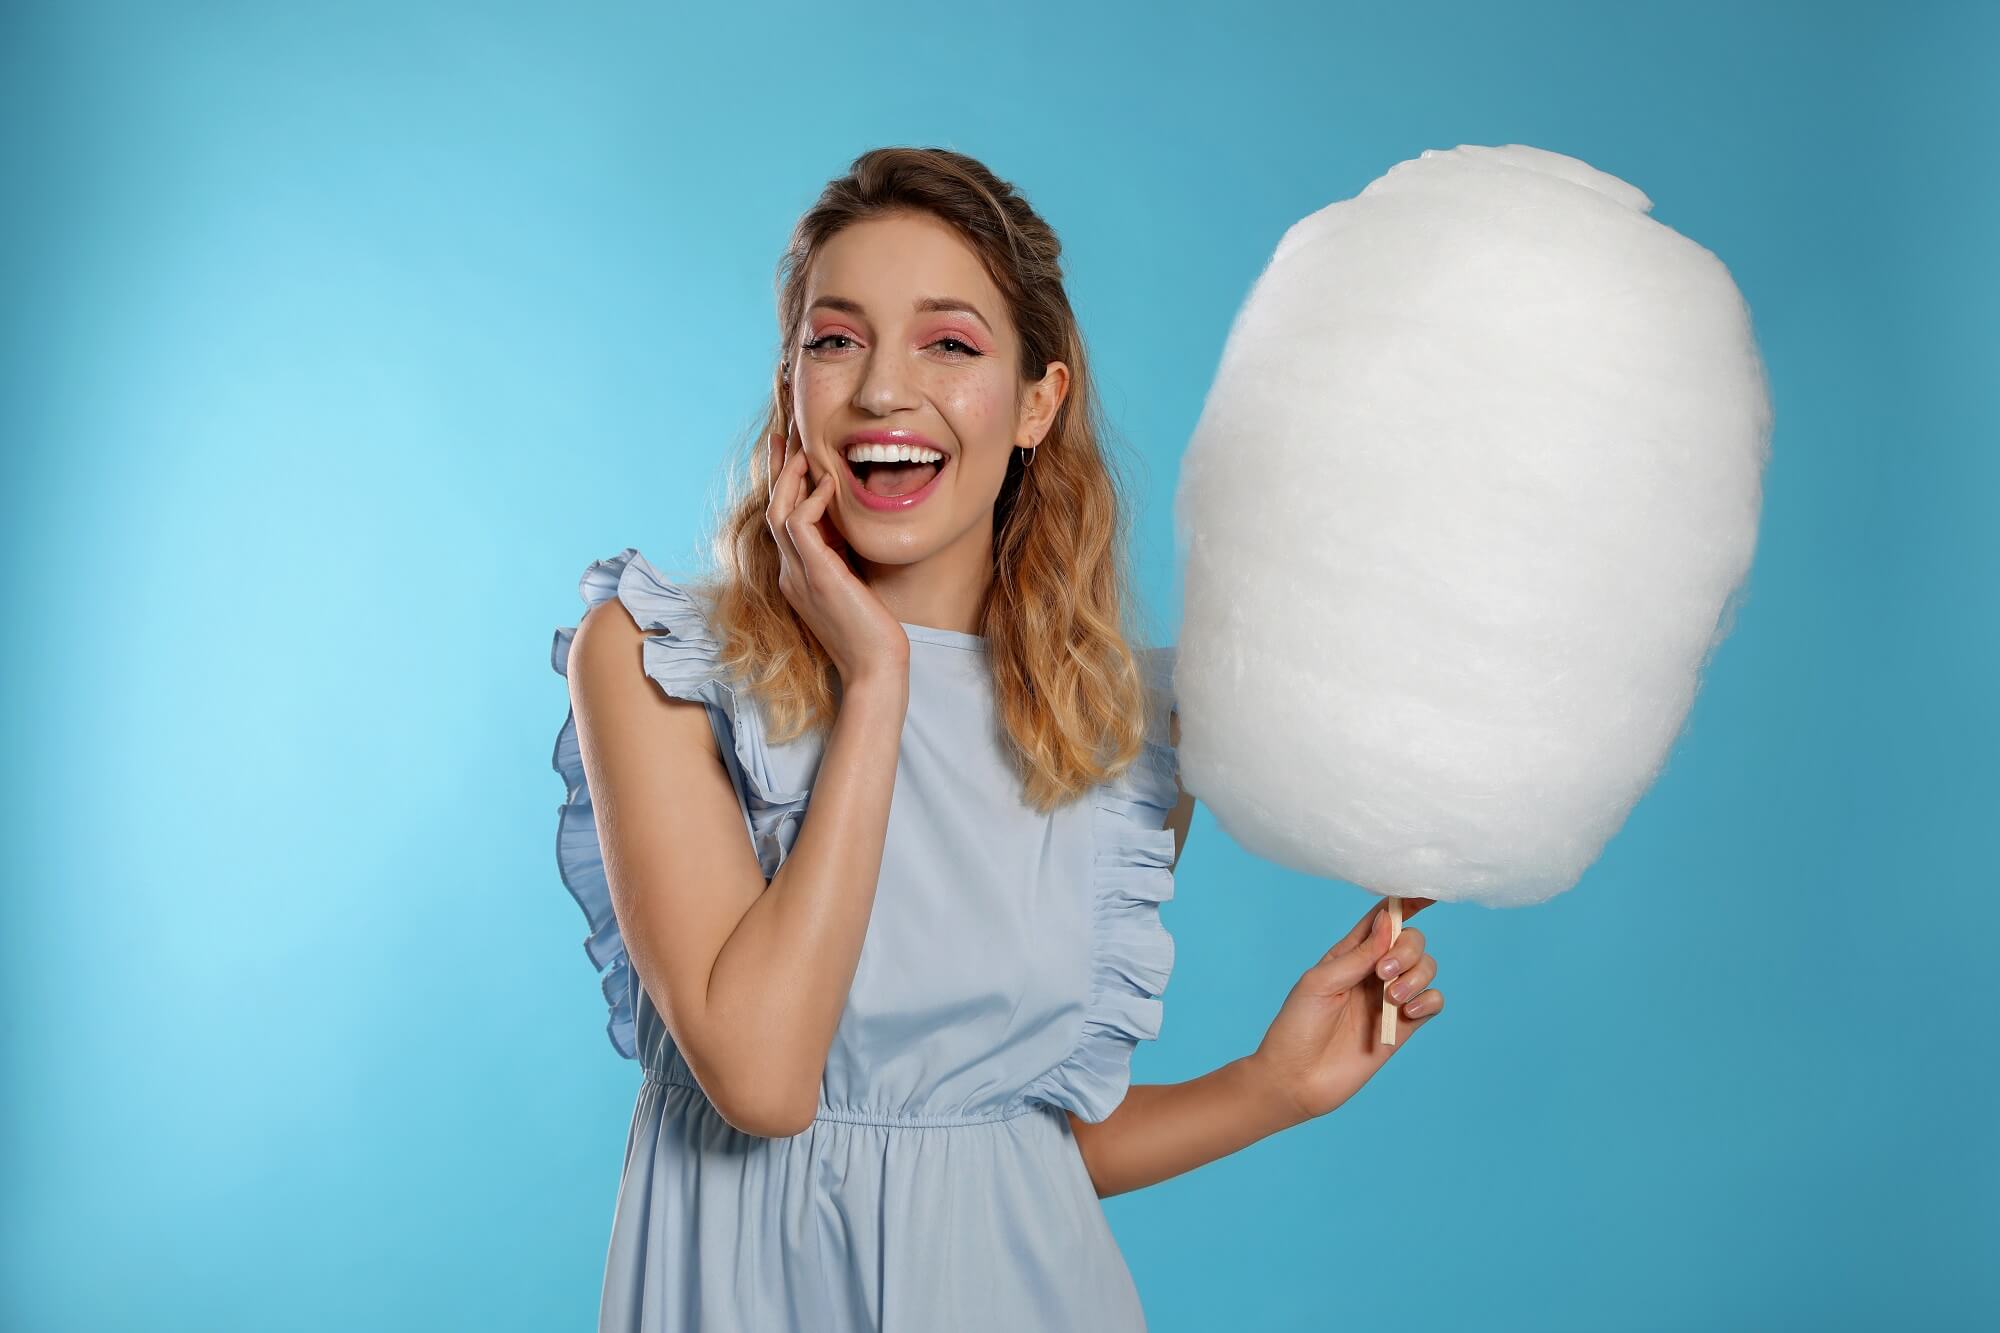 cotton candy macchina per zucchero filato ariete 2973 azzurro